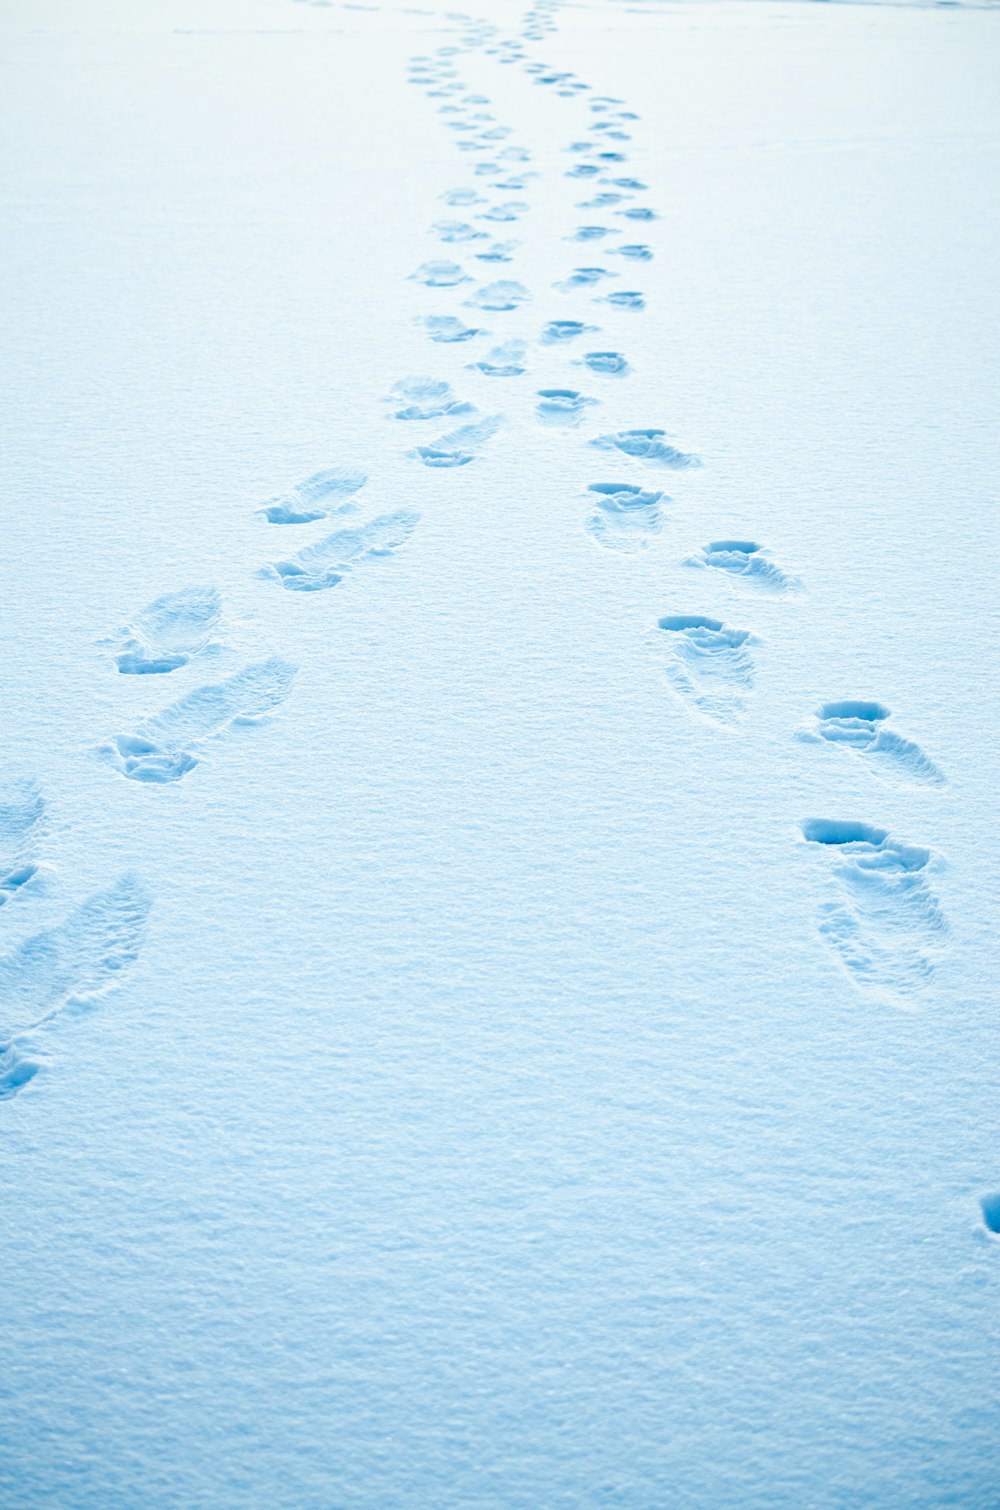 Una lunga fila di impronte nella neve